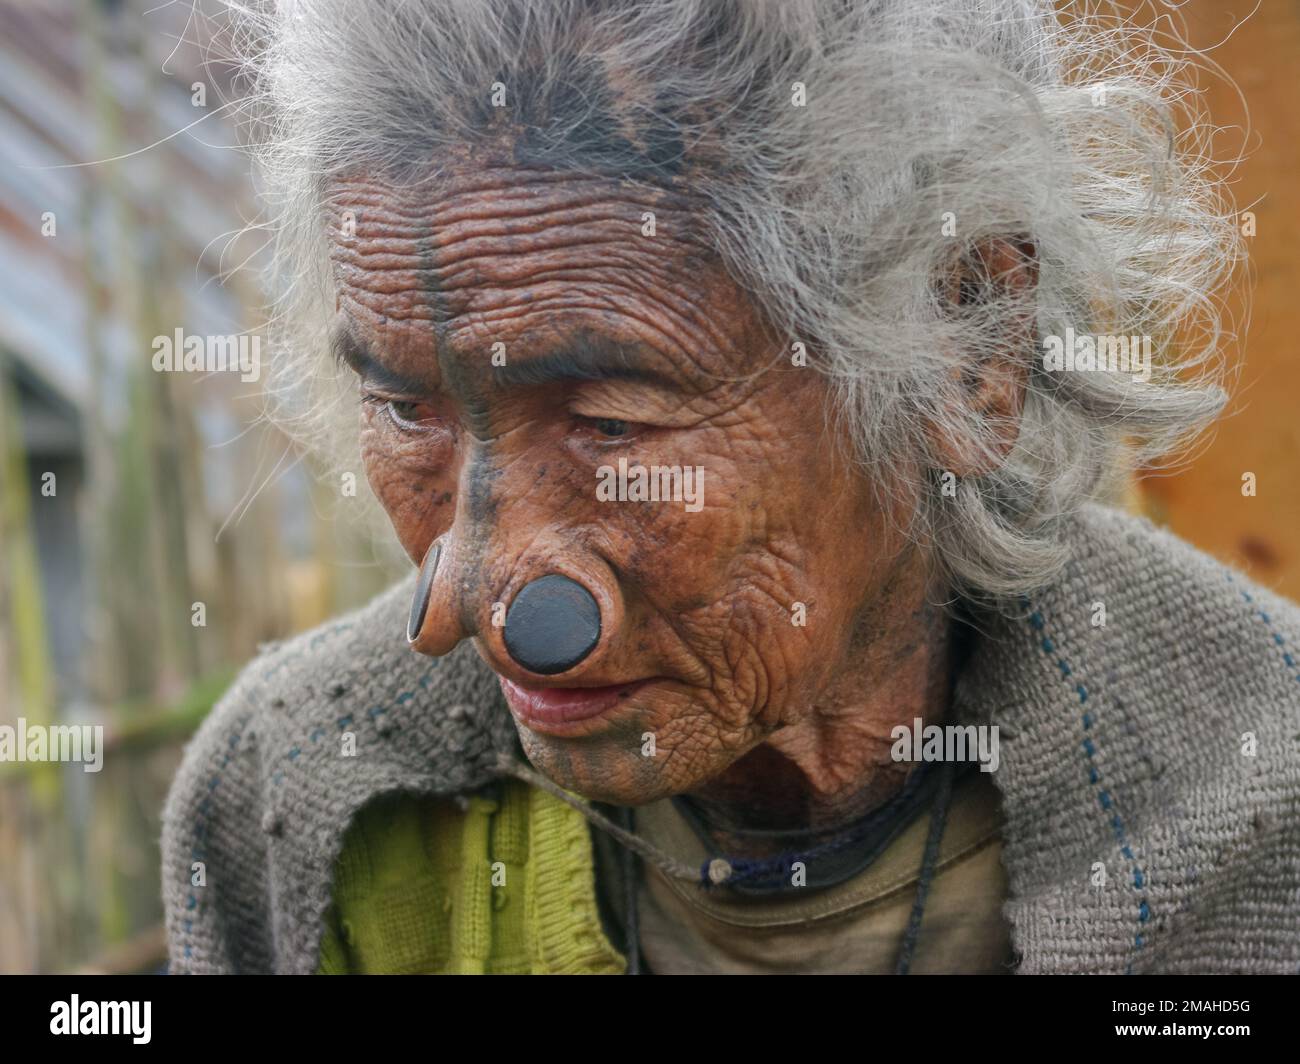 Ziro, Arunachal Pradesh, Inde - 02 19 2013 : Portrait de la pauvre femme tribale d'Apatani avec des tatouages faciaux traditionnels et des prises de nez regardant vers le bas Banque D'Images